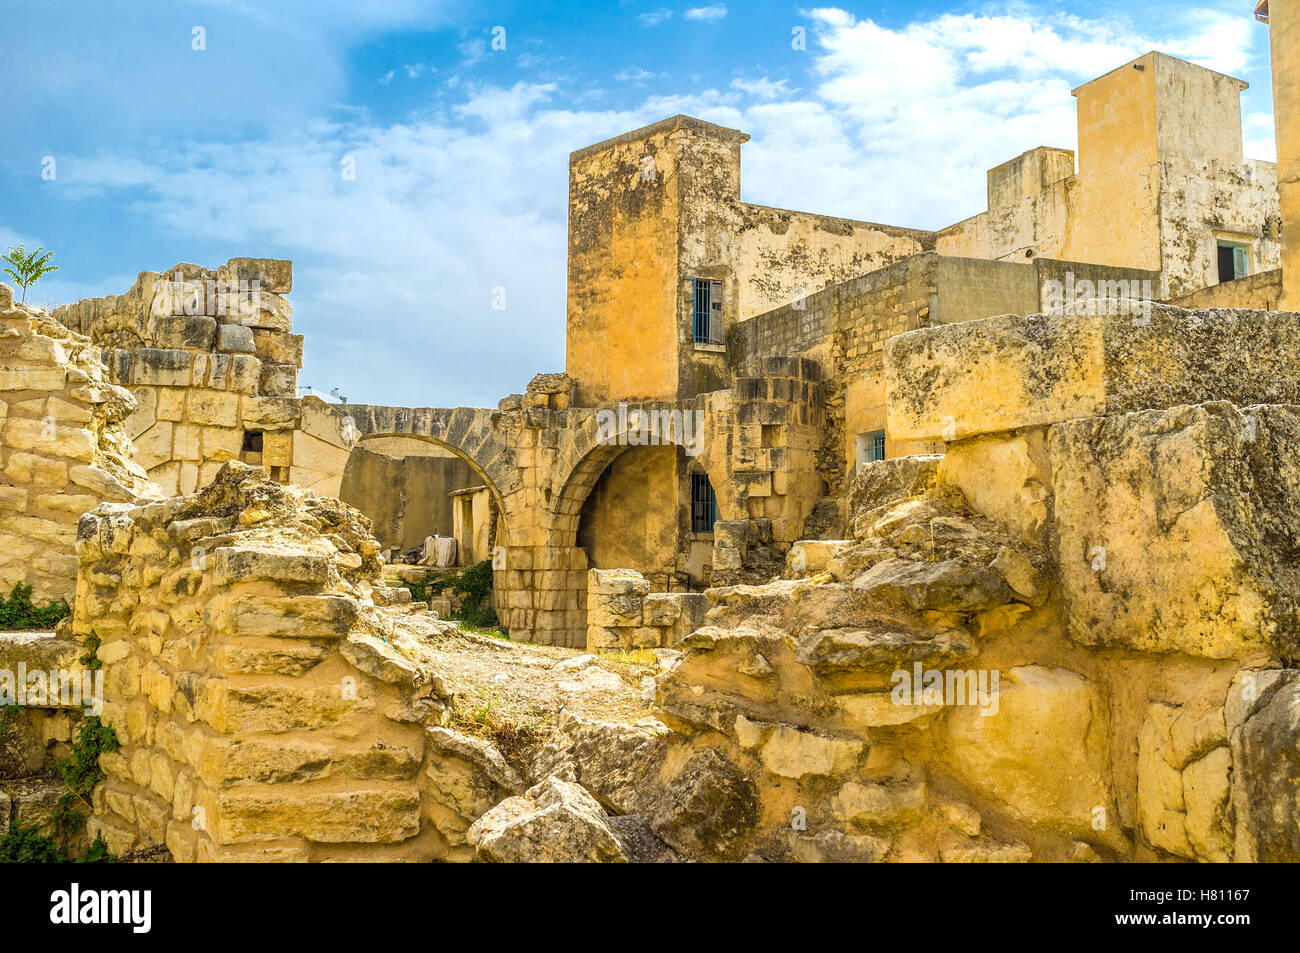 Las ruinas de los baños romanos ancent entre los viejos barrios residenciales de El Kef, Túnez. Foto de stock